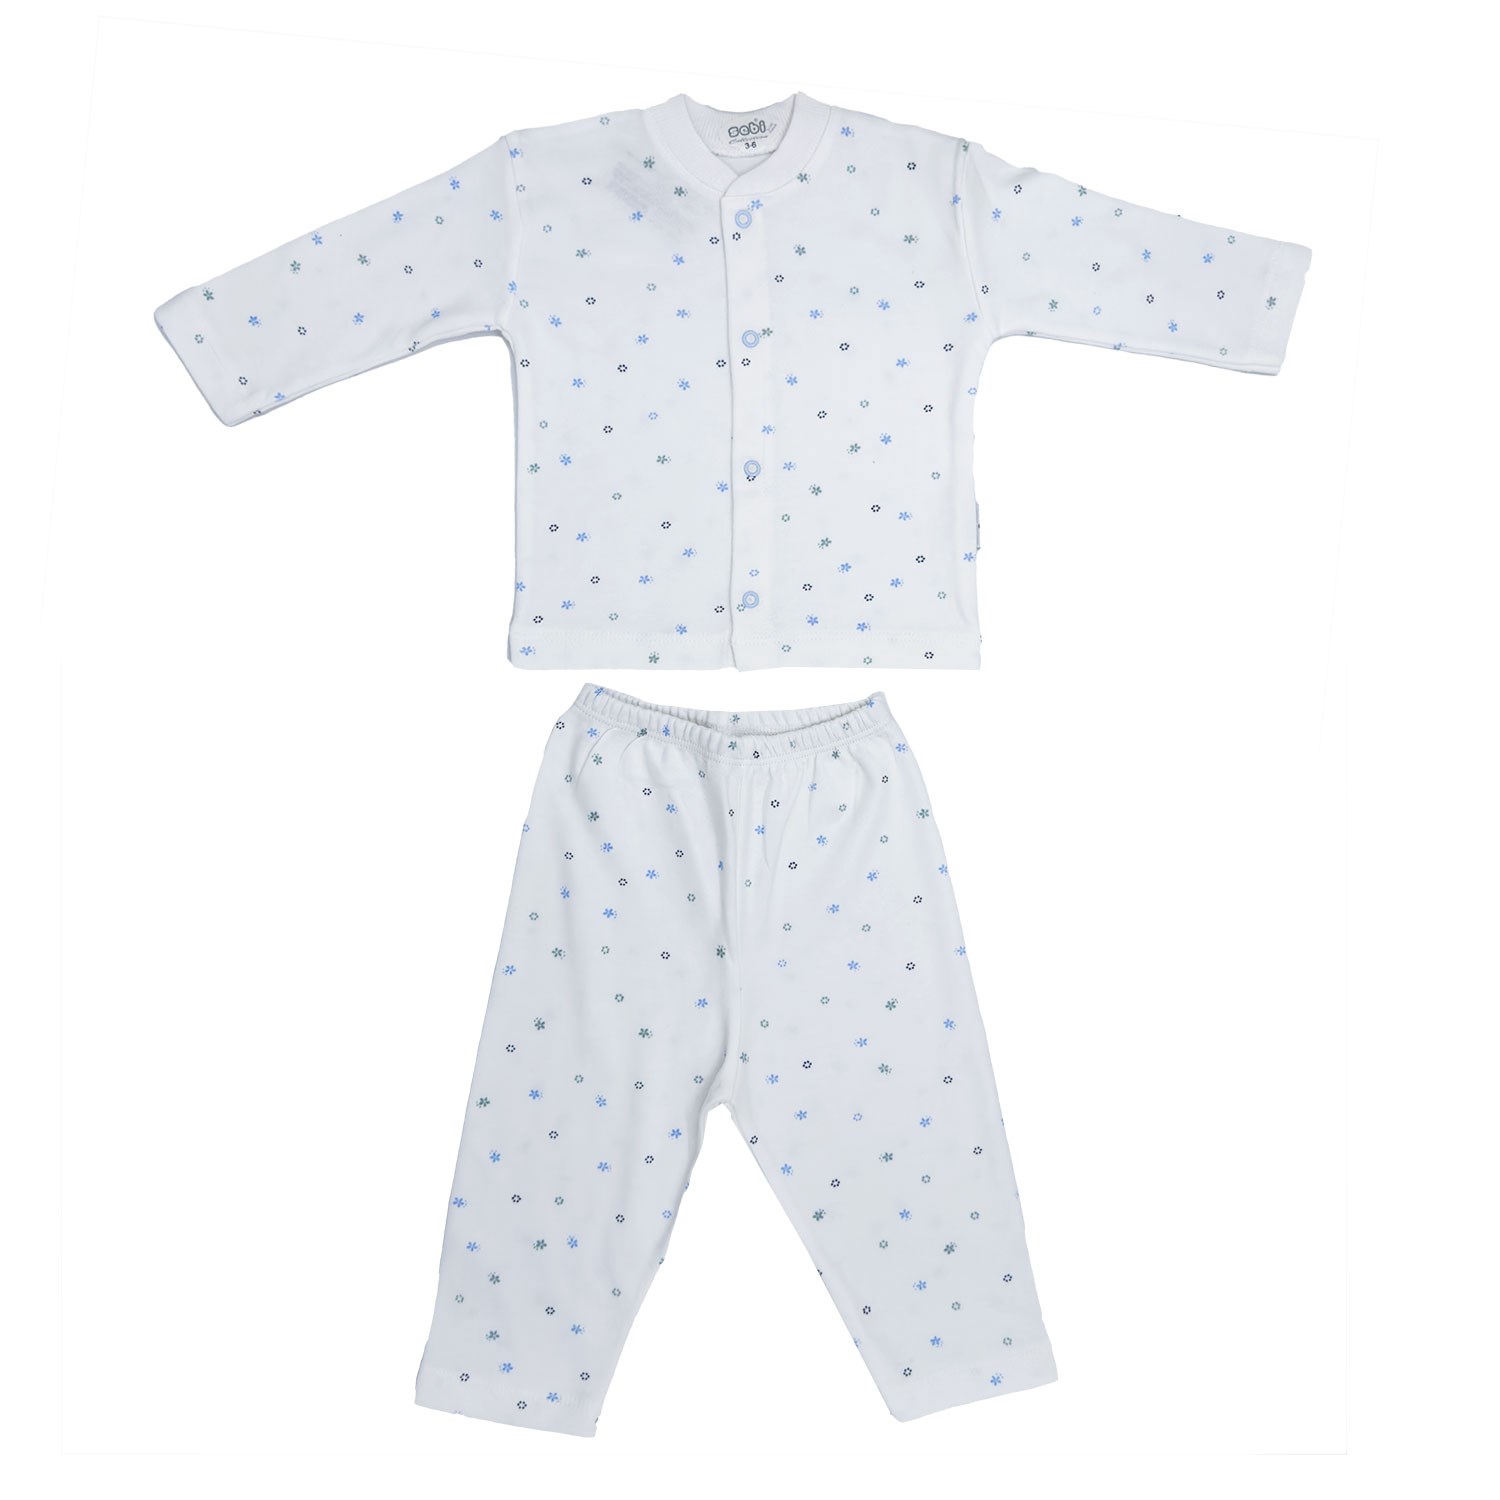 Sebi Bebe Ay Yıldız Baskılı Bebek Pijama Takımı 2331 Beyaz-Mavi